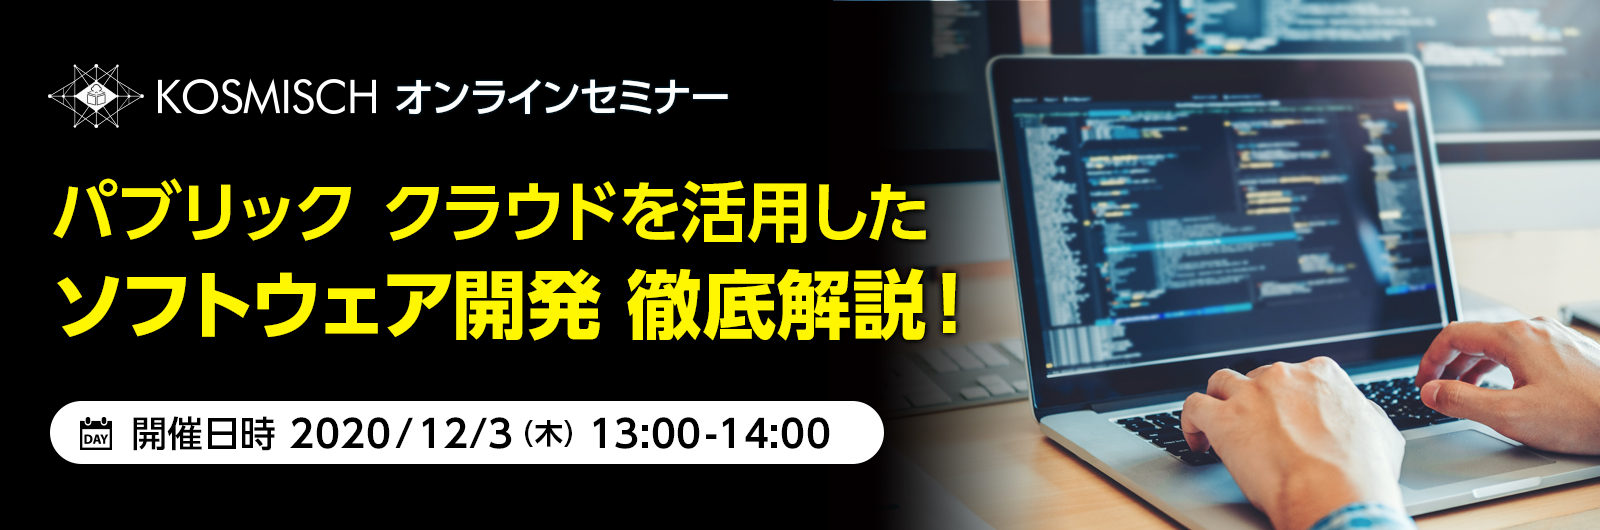 「KOSMISCH全国キャラバン」でパブリック クラウドを活用したソフトウェア開発を支援するオンラインセミナーを日本マイクロソフトと共催